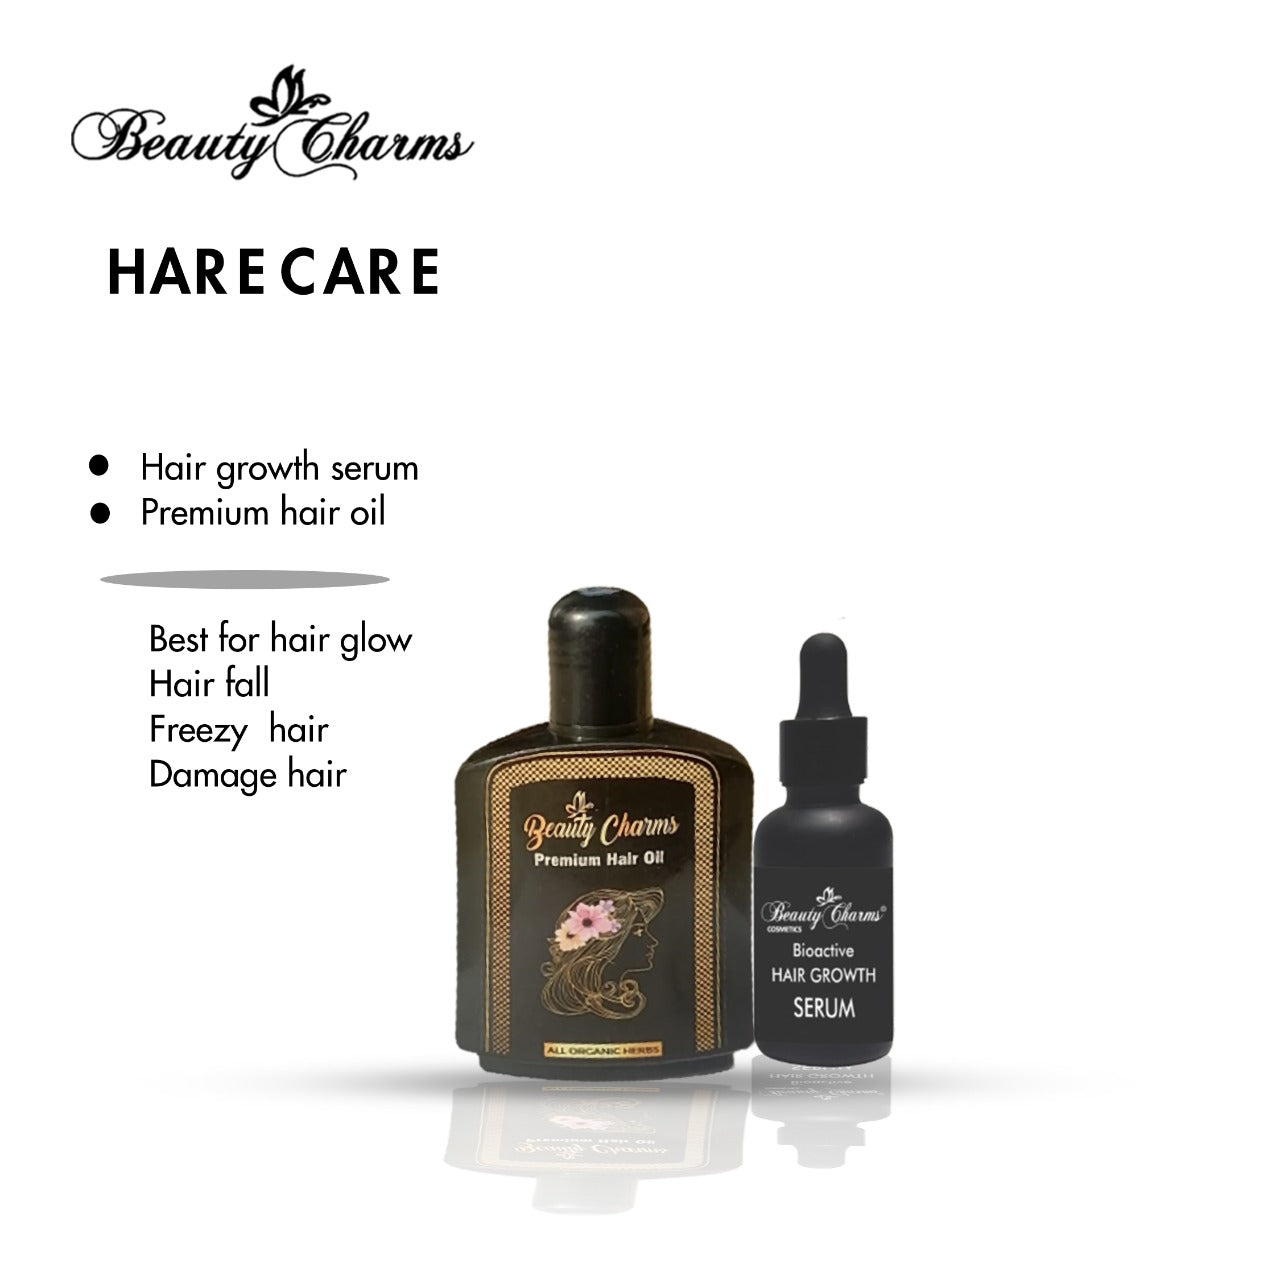 Hair Growth Serum And Premium Hair oil